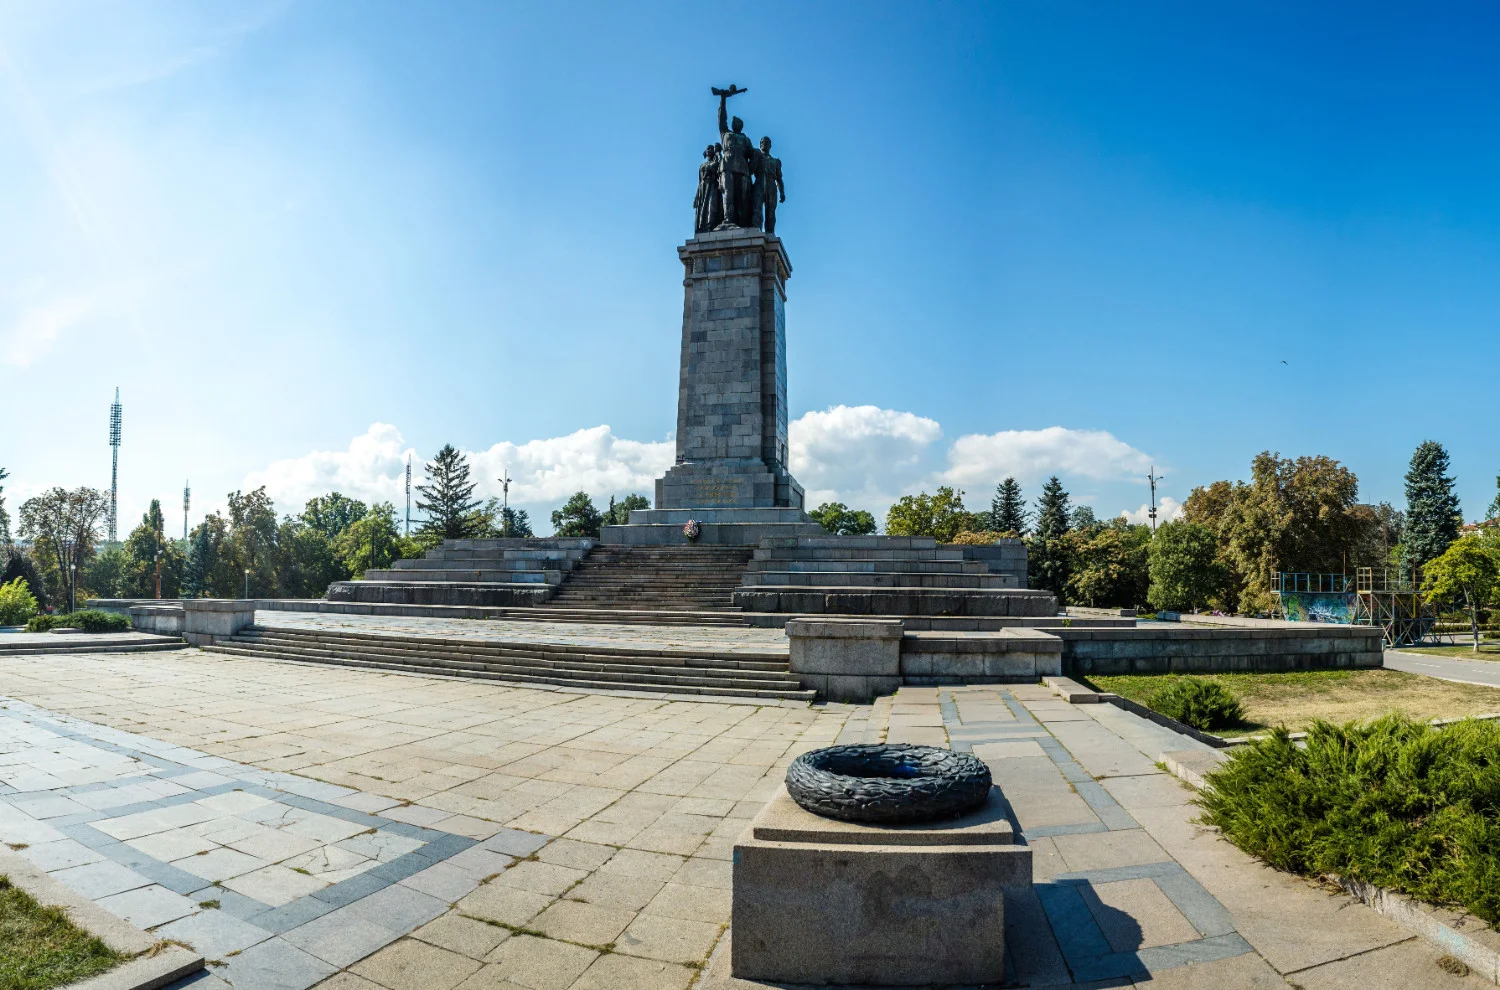 Monumentul Armatei Sovietice marcheaza aceasta perioada provocatoare din istoria Bulgariei printr-un monument la fel de impunator precum fortele care l-au comandat.